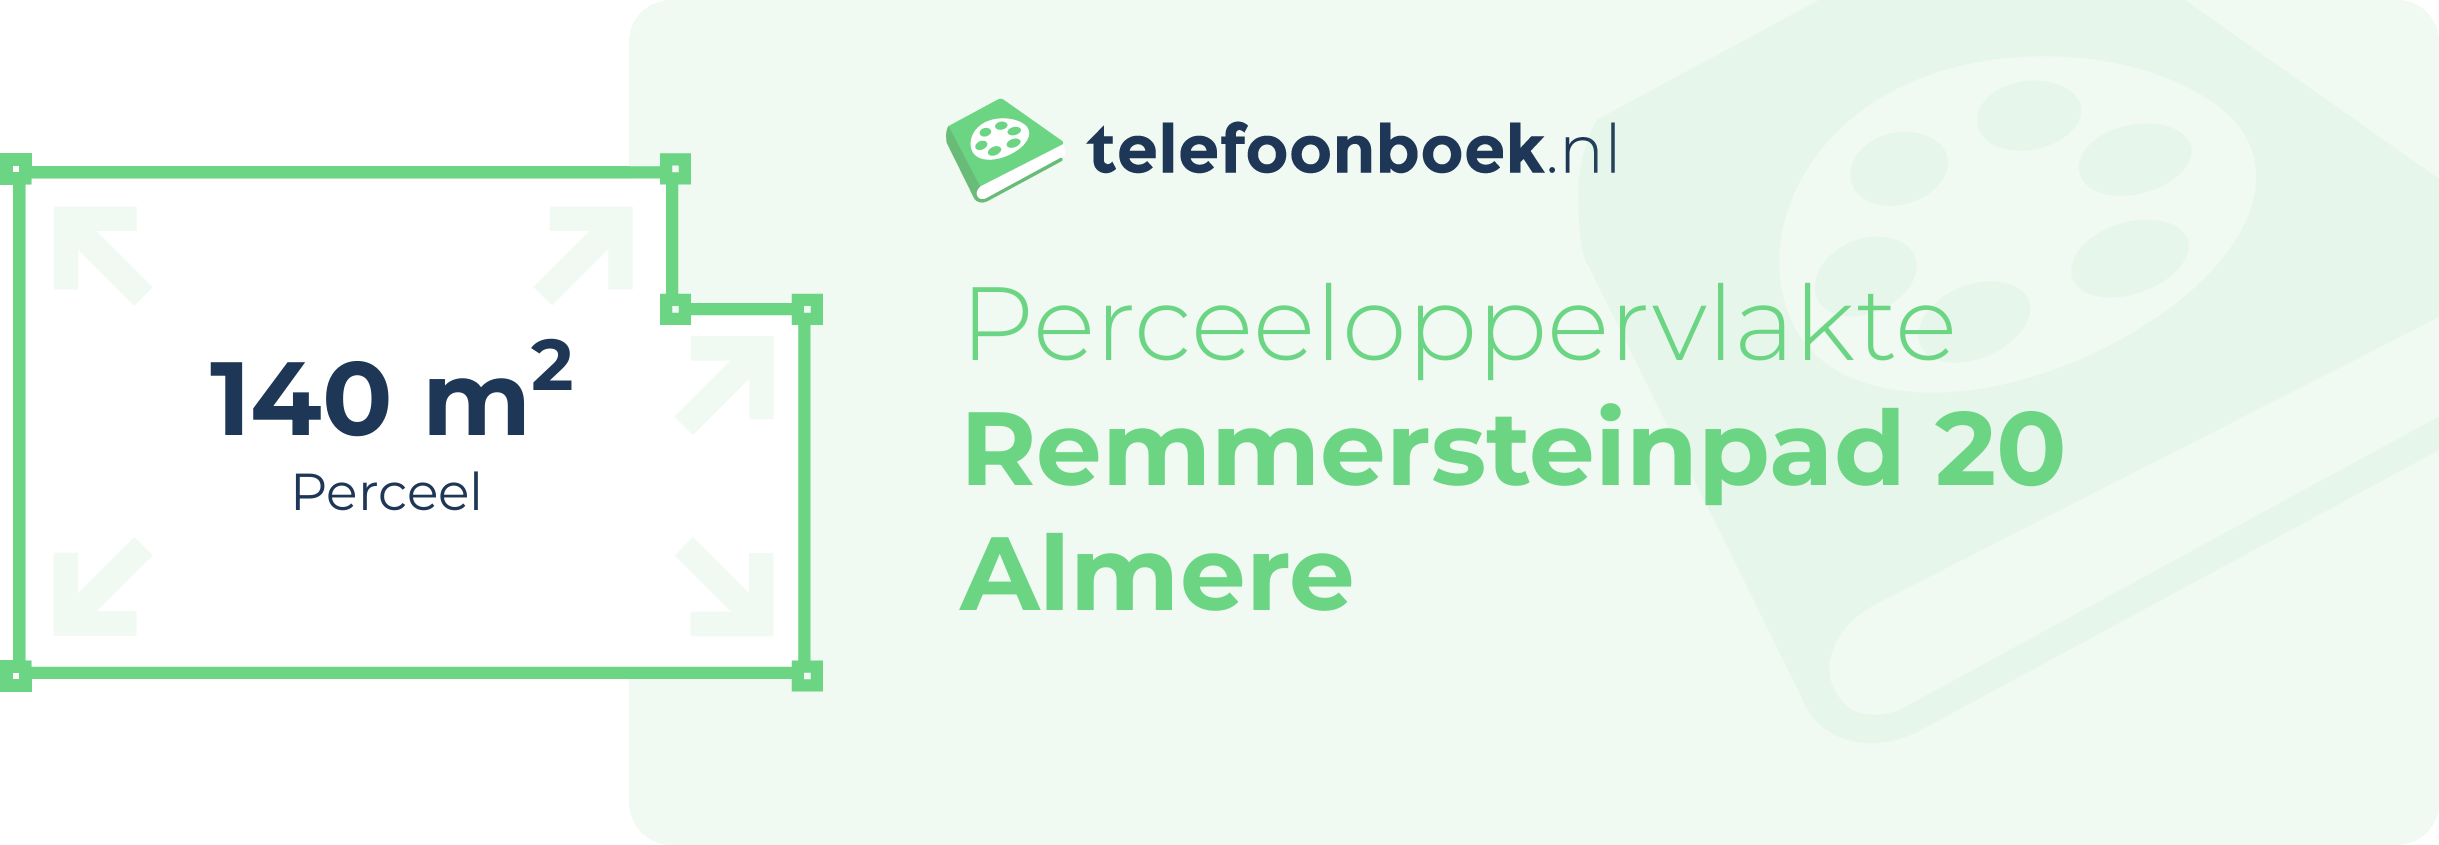 Perceeloppervlakte Remmersteinpad 20 Almere